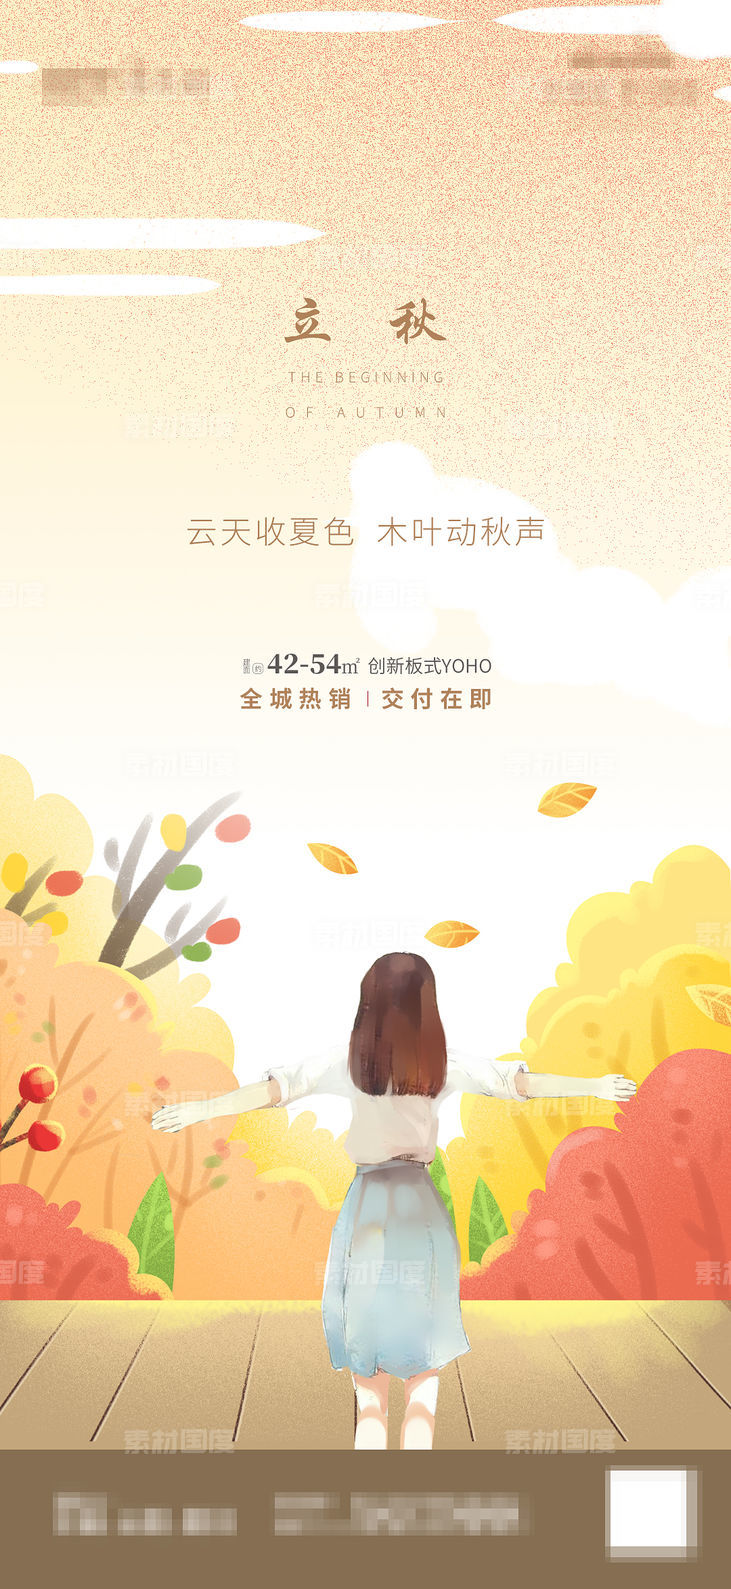 插画秋色中的小女孩秋天景色手绘立秋节气刷屏